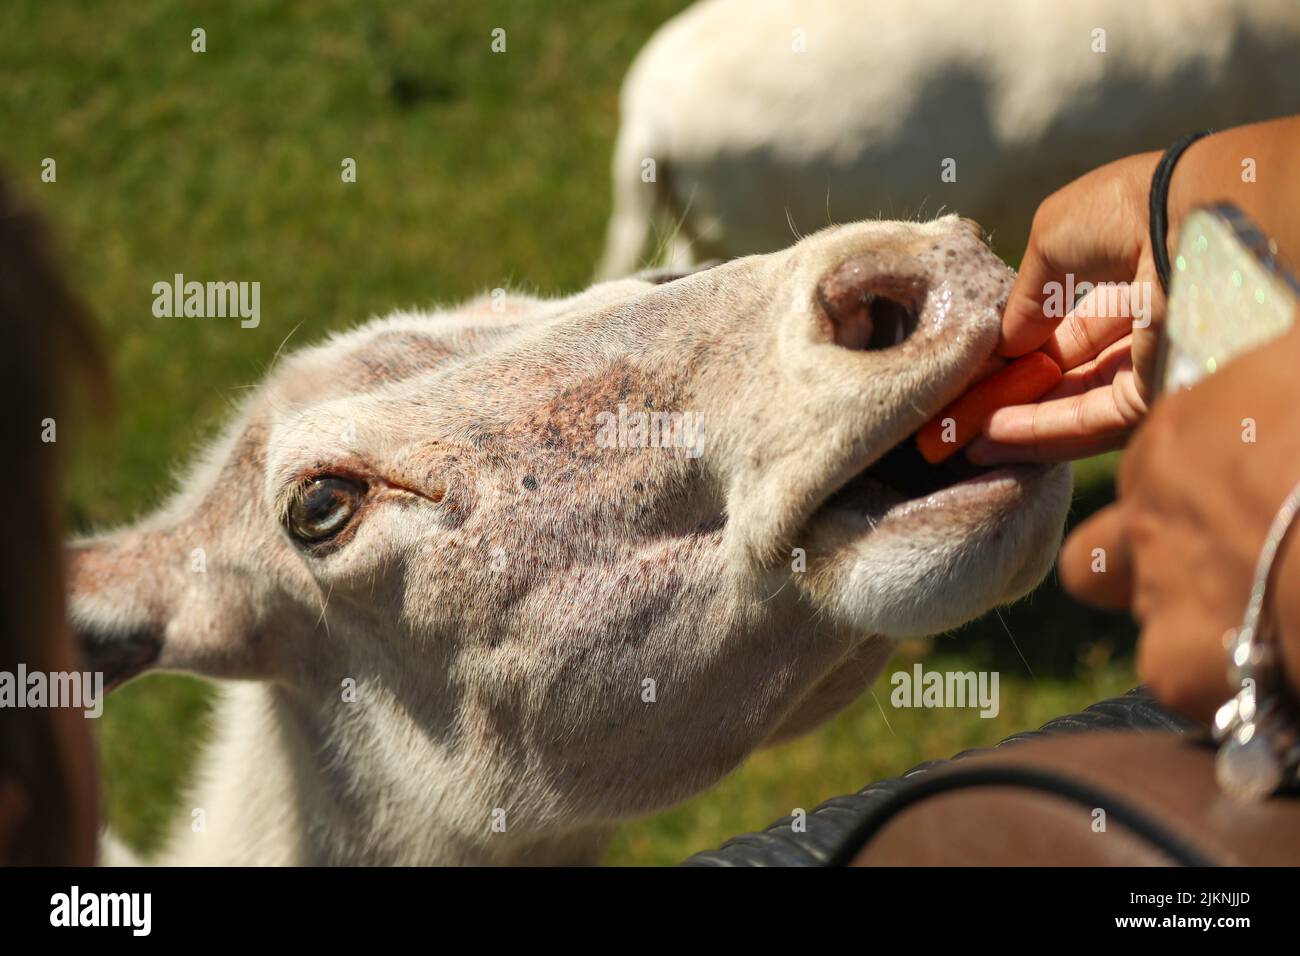 Una vista di una capra (capra hircus) in uno zoo o safari parco mangiare carota da una mano umana Foto Stock